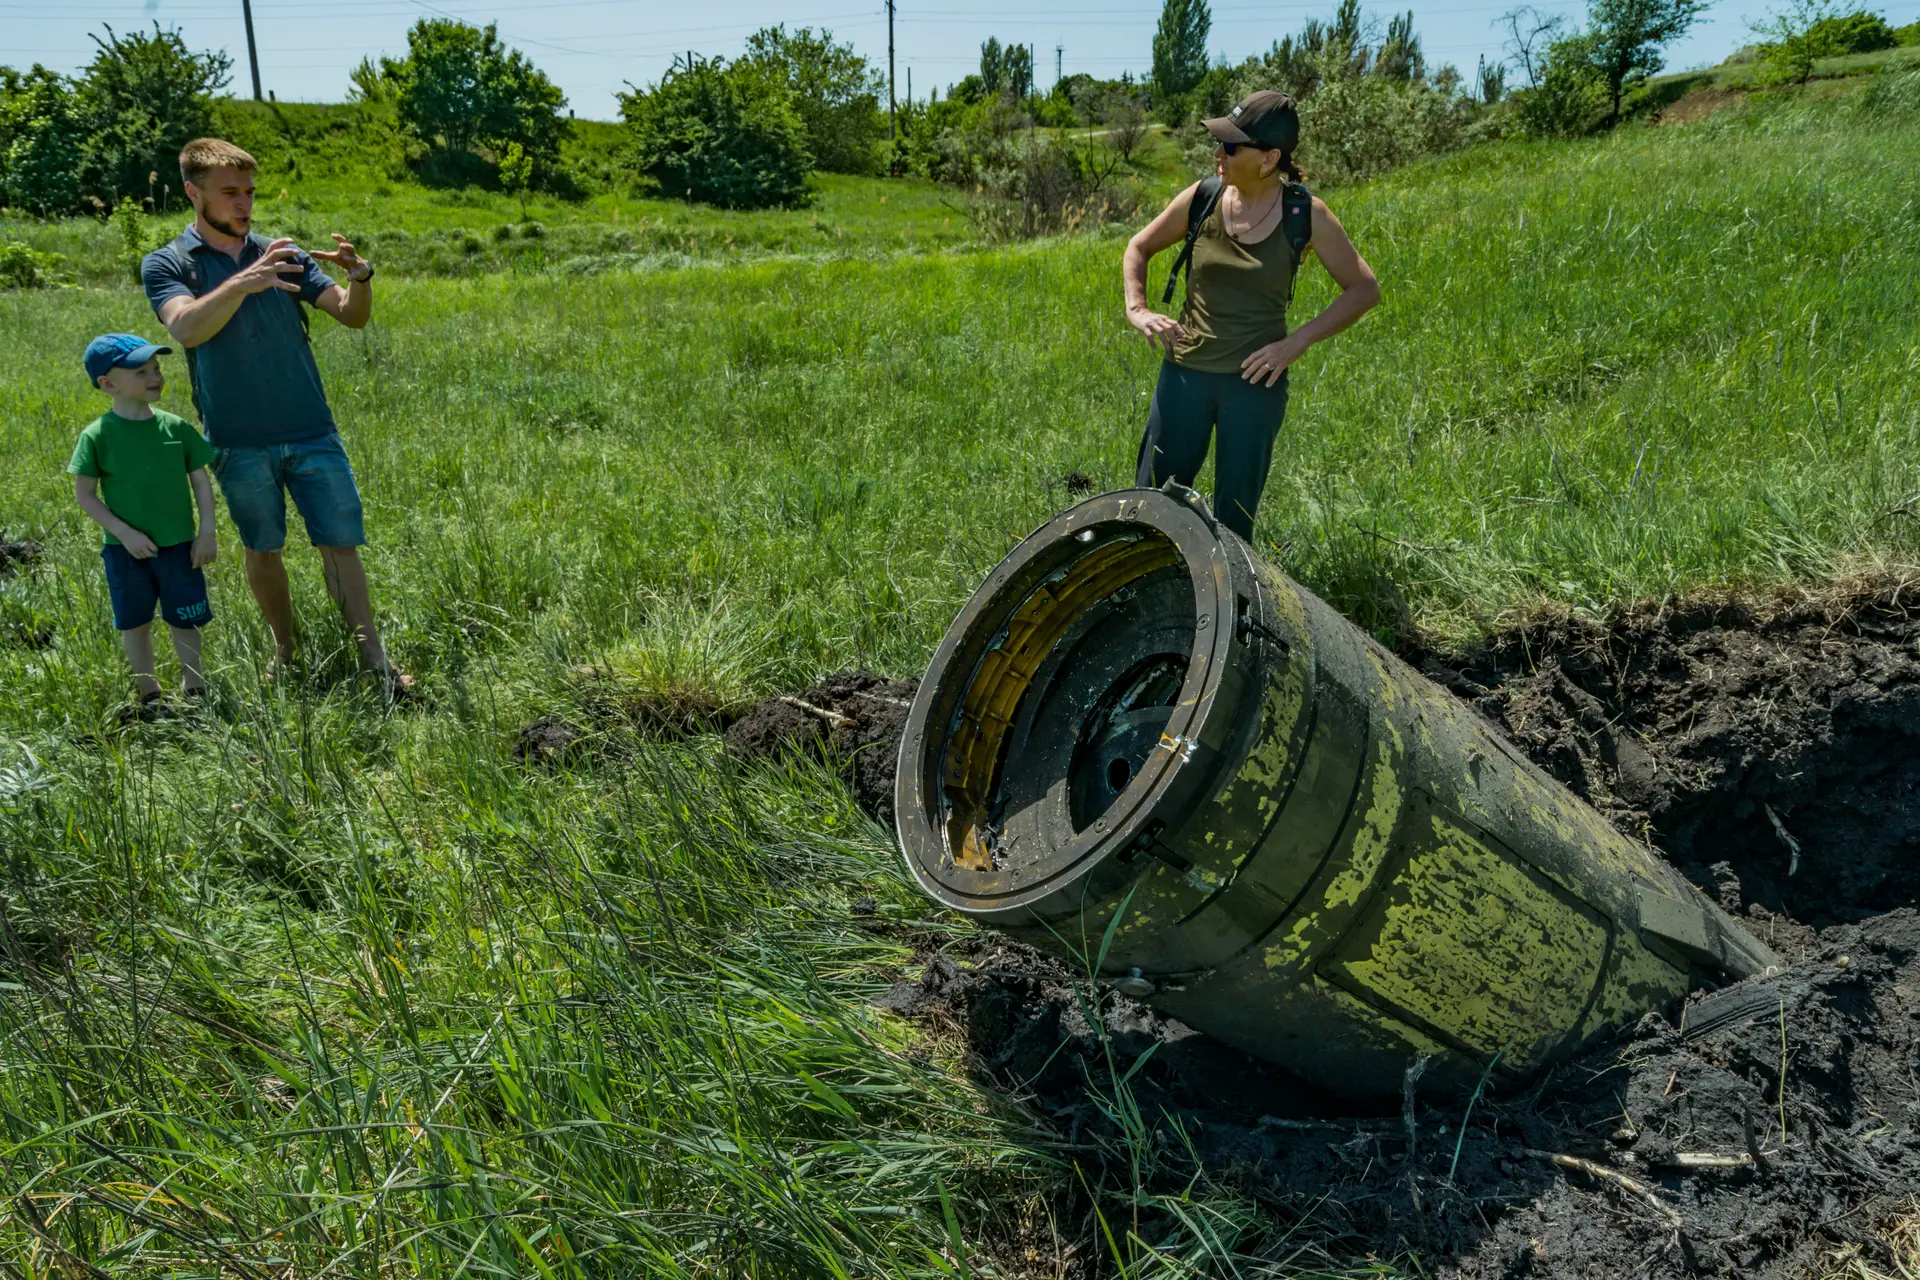 Civis observam os restos de um míssil Tochka russo na região ucraniana de Donbas. Moscovo acusa Kiev de utilizar projéteis idênticos, mas com munições ilegais 